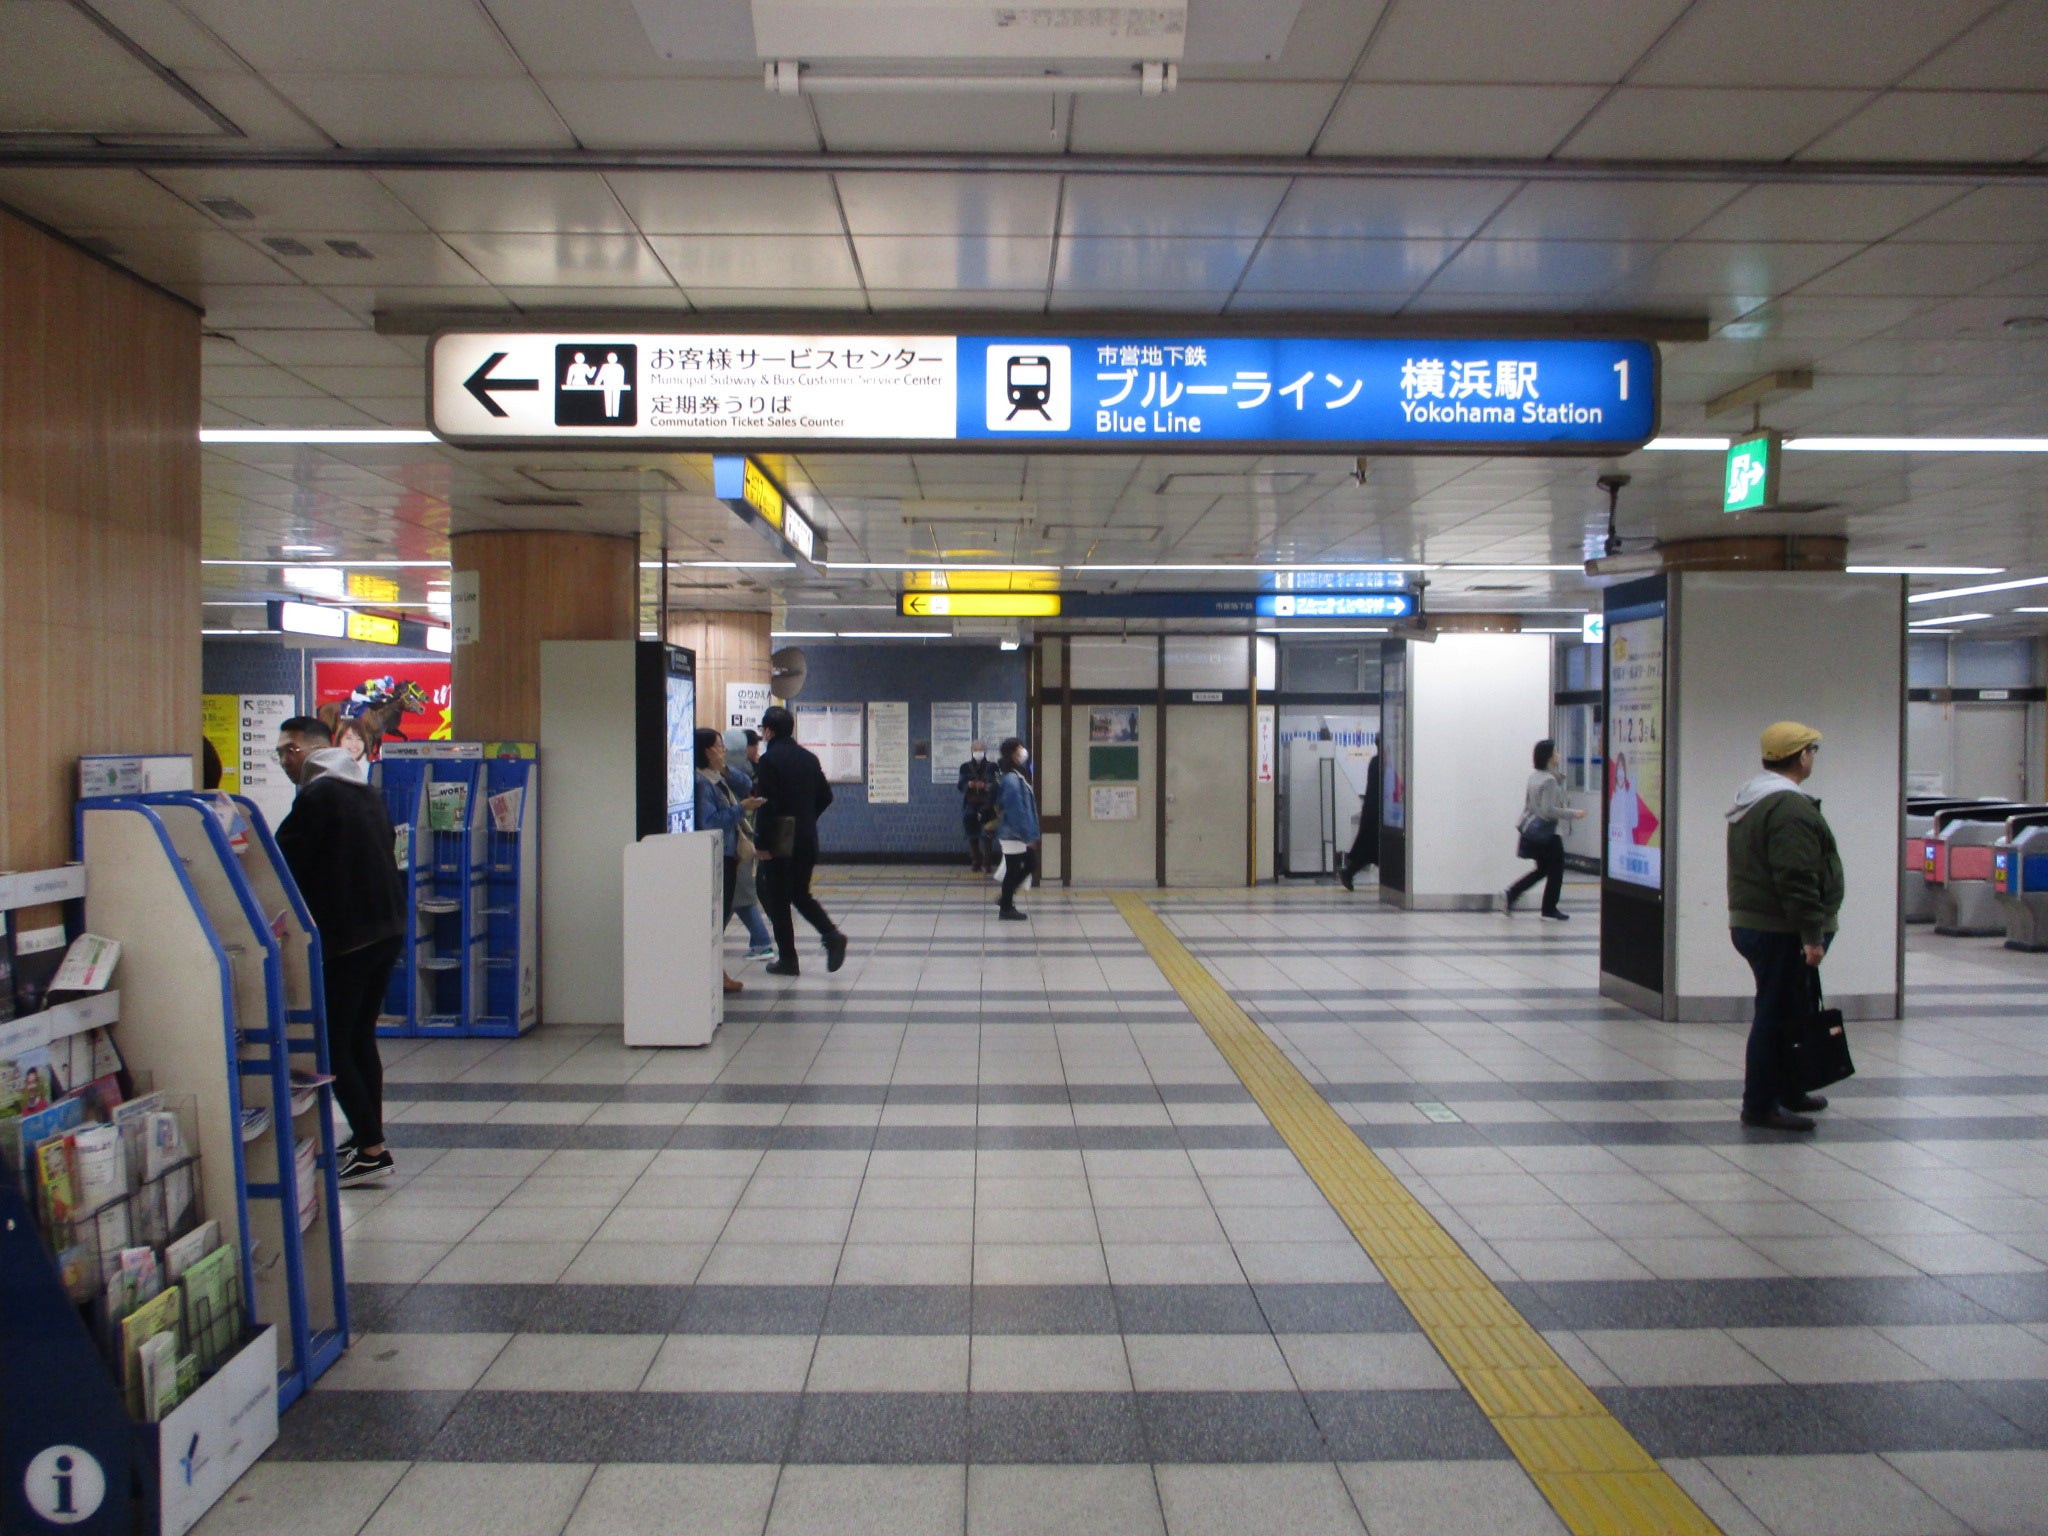 横浜市営地下鉄ブルーライン横浜駅 Sdm48 2のブログ